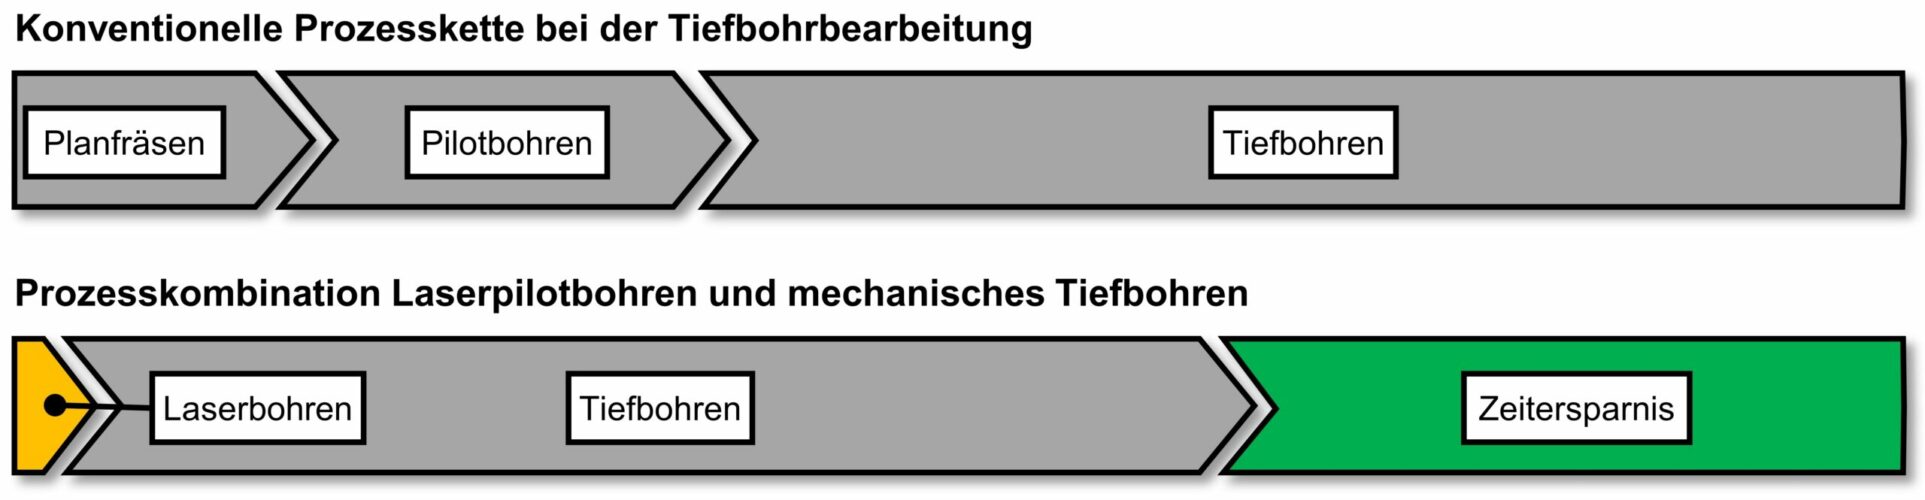 Zeitersparnis durch die Verkürzung der konventionellen Prozesskette | Quelle: ISF Dortmund